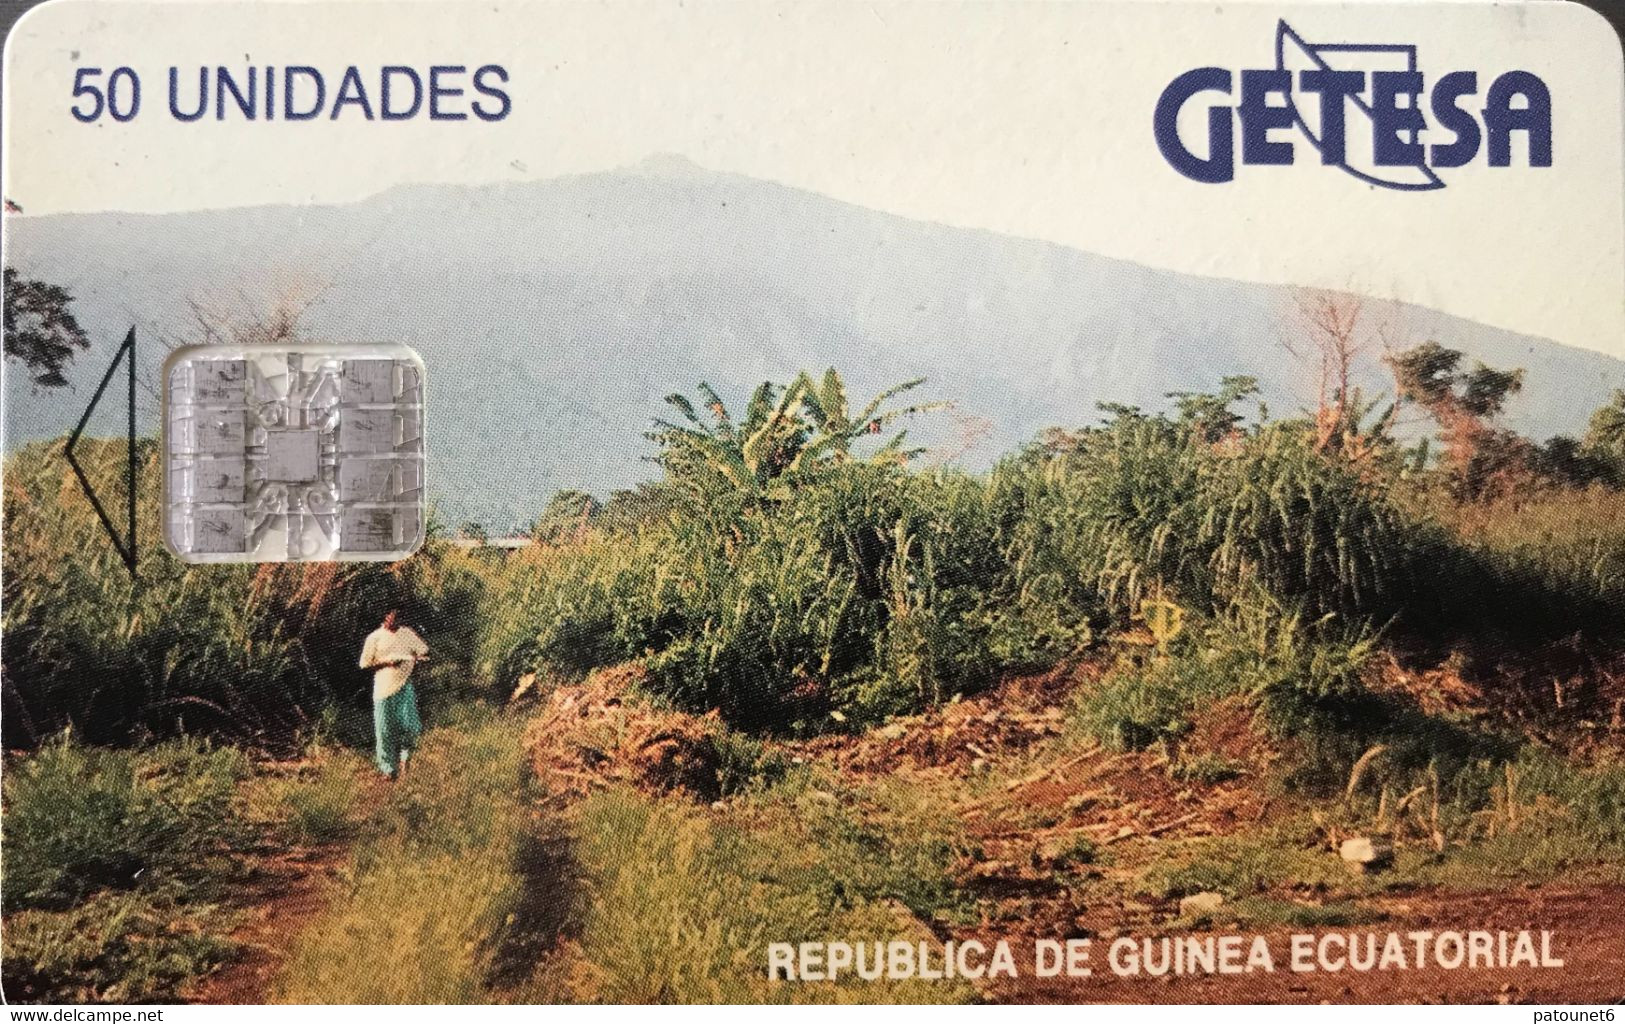 GUINEE-EQUATORIALE  -  Phonecard  -  GETESA - SC7 -  50 Unidades - Guinée-Equatoriale